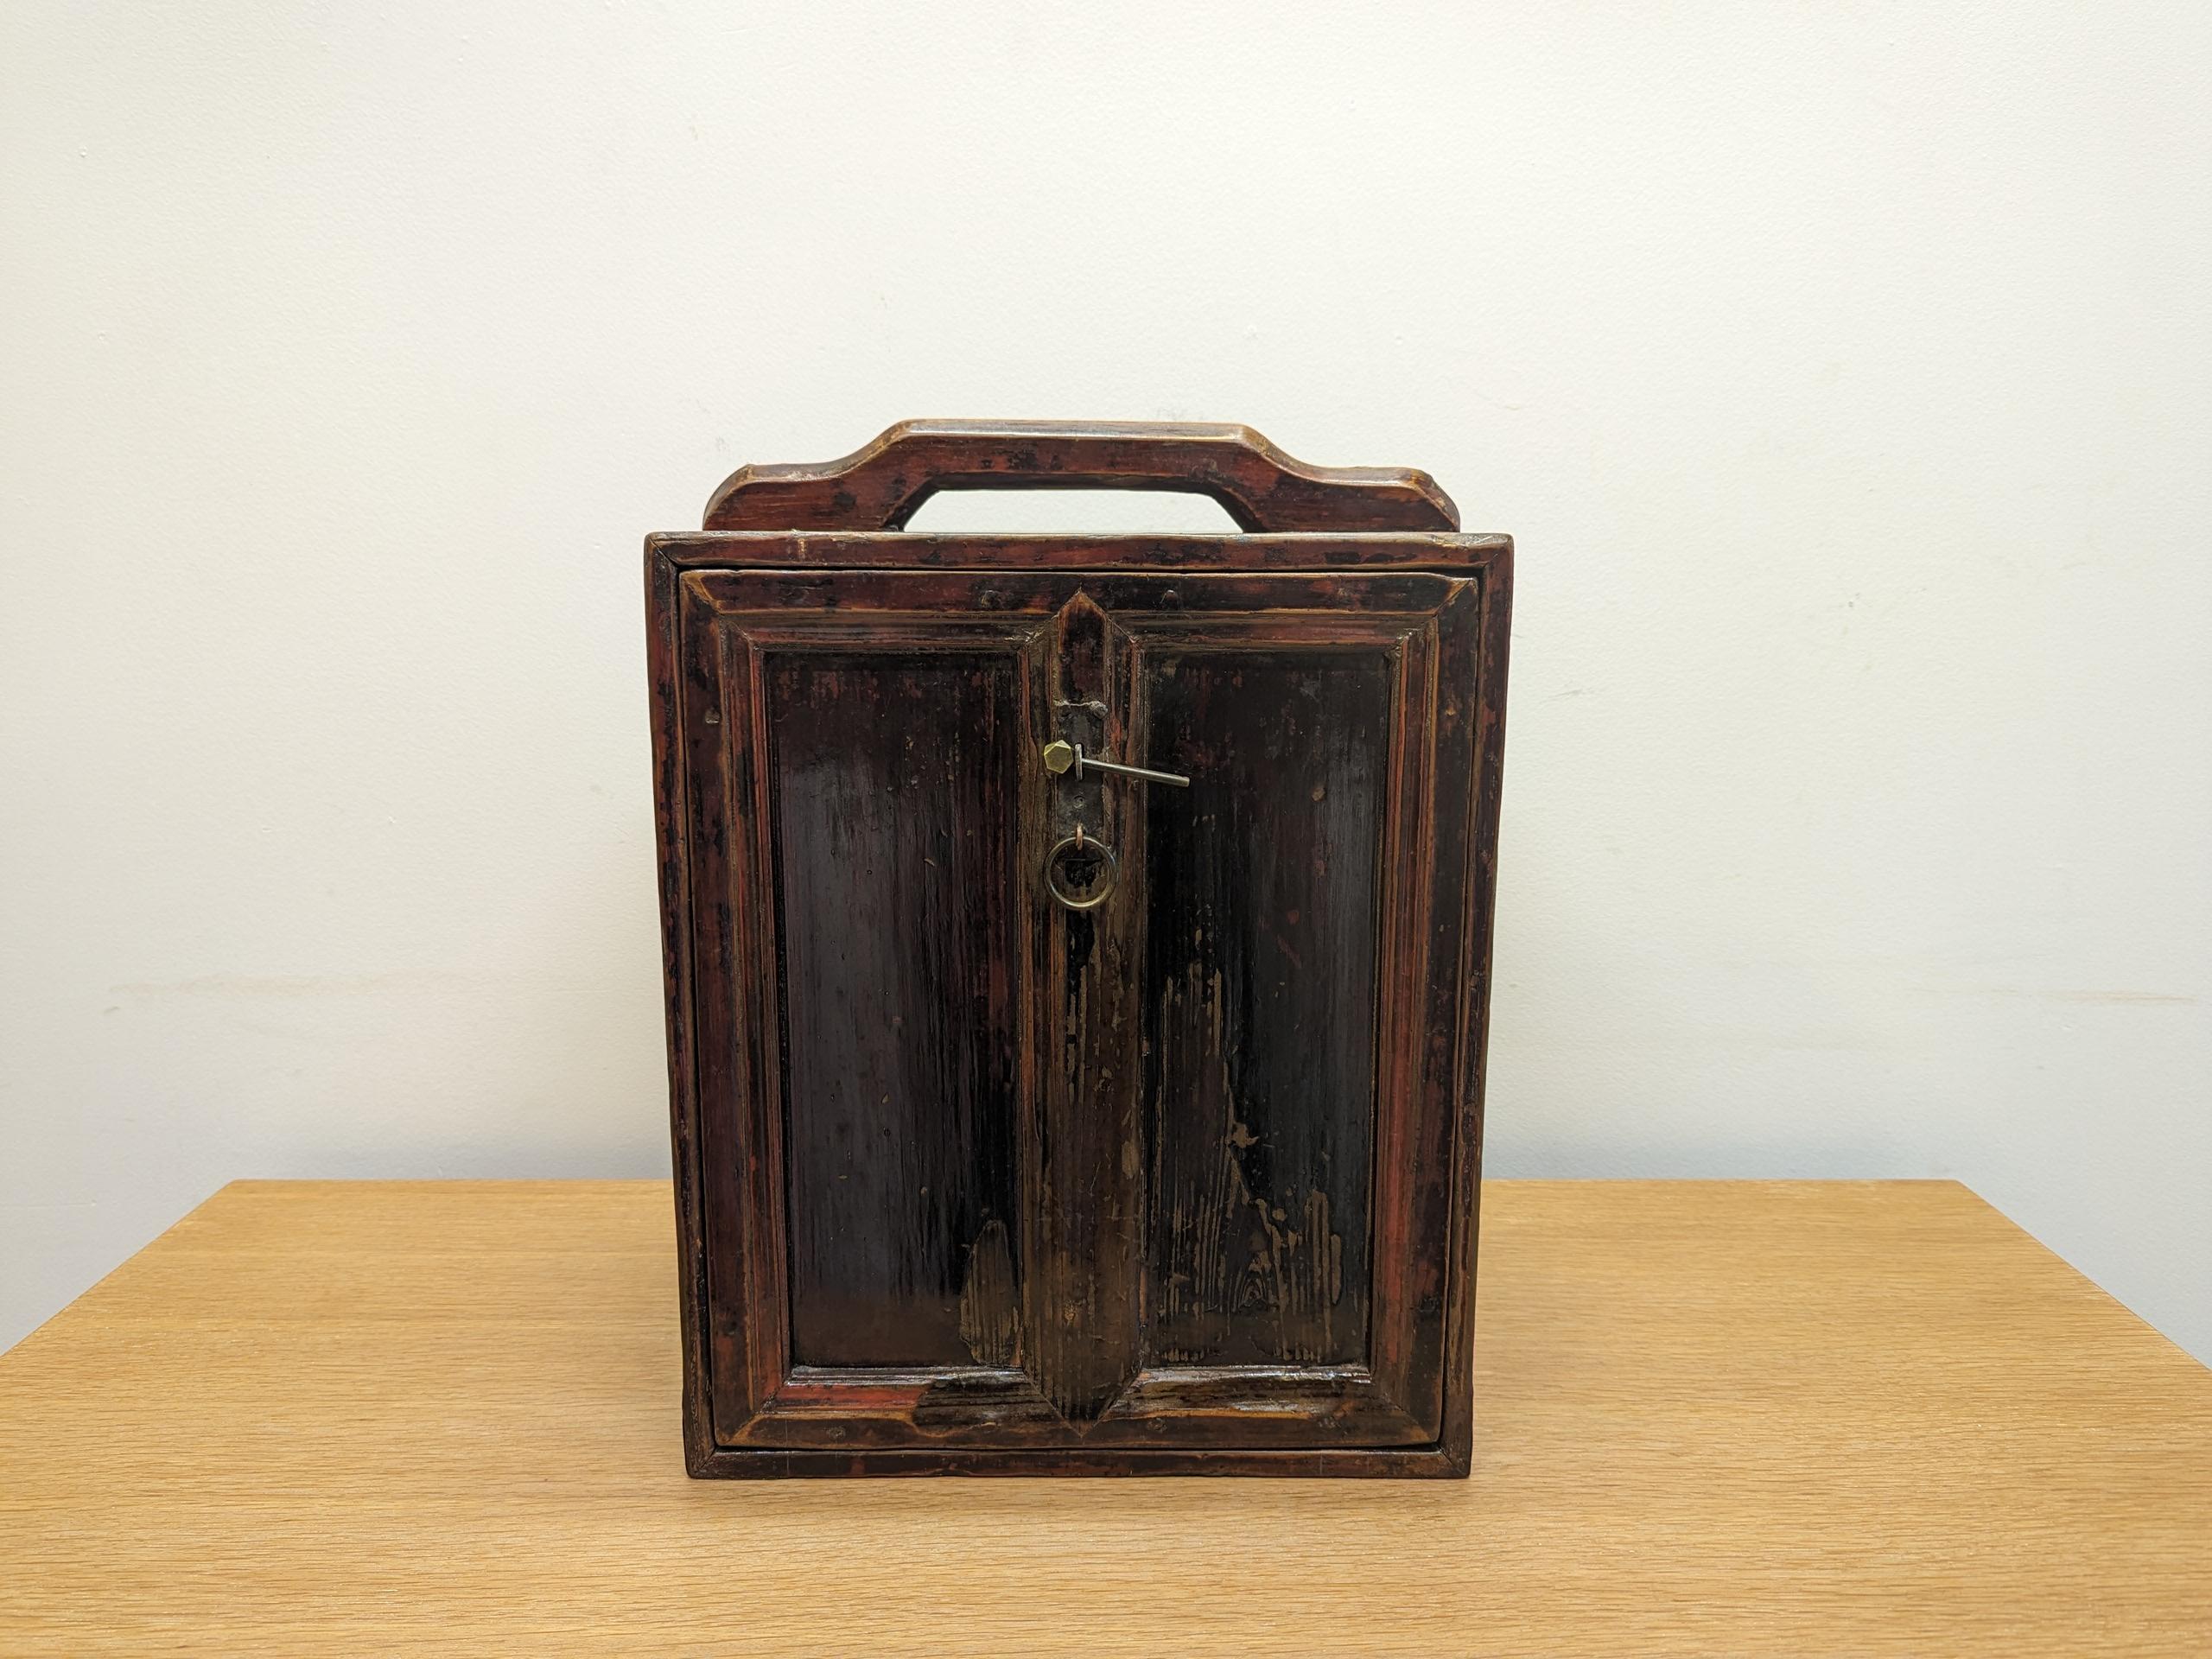 Boîte d'apothicaire du 19e siècle.  Coffret d'apothicaire chinois ancien.   Composée de bois d'orme et de pin, cette mallette comporte sept tiroirs avec des poignées en laiton.  Chaque tiroir est orné d'un motif de rideau sculpté sur la plaque